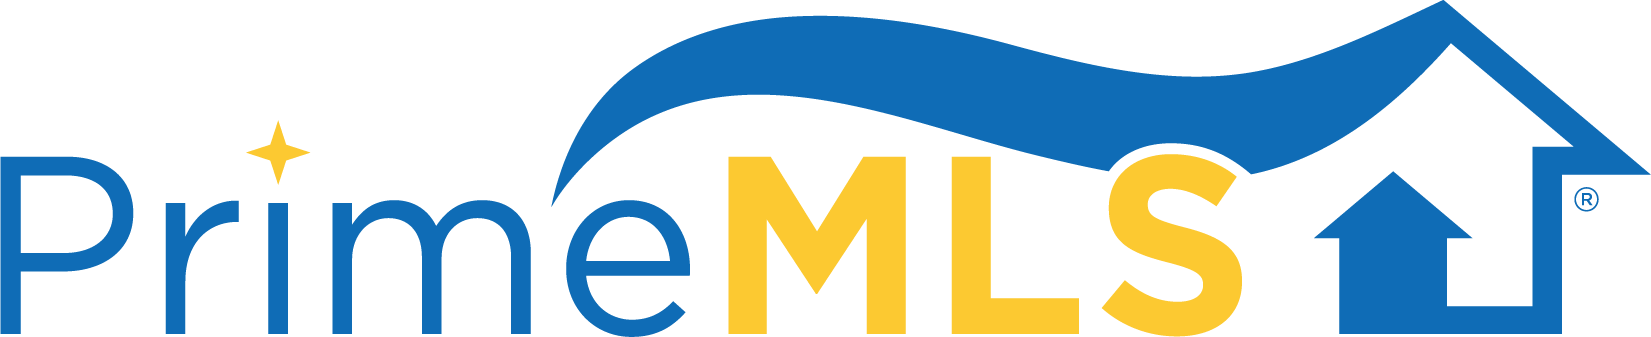 PrimeMLS logo color